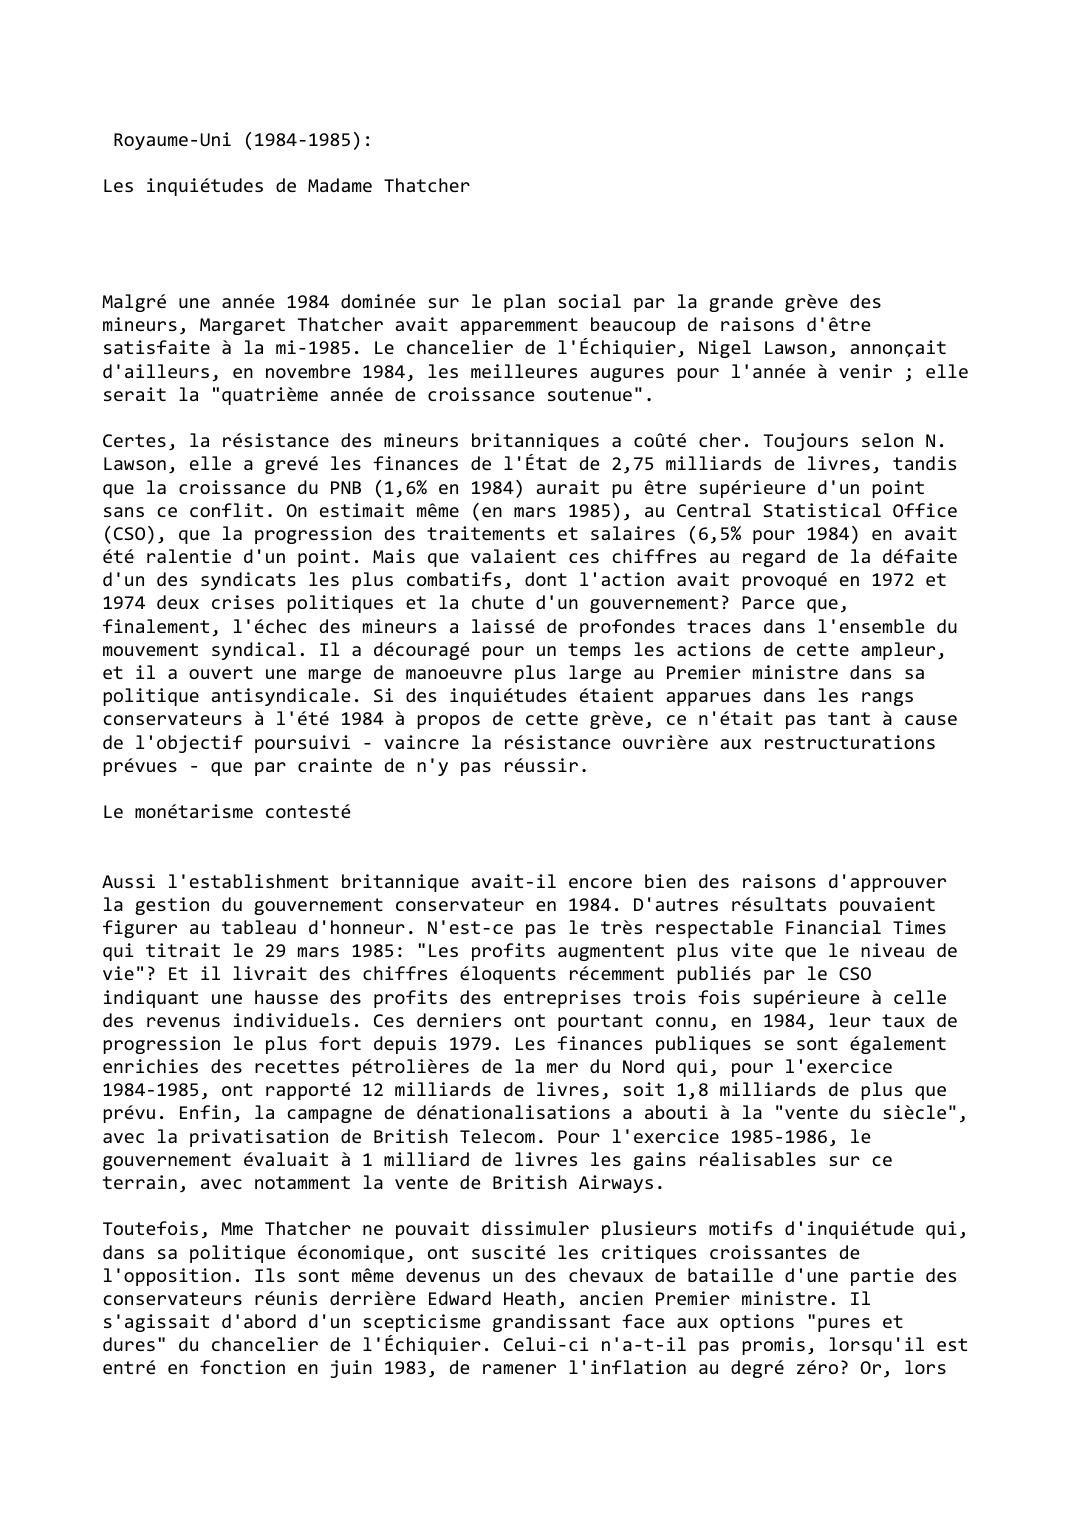 Prévisualisation du document Royaume-Uni (1984-1985):

Les inquiétudes de Madame Thatcher